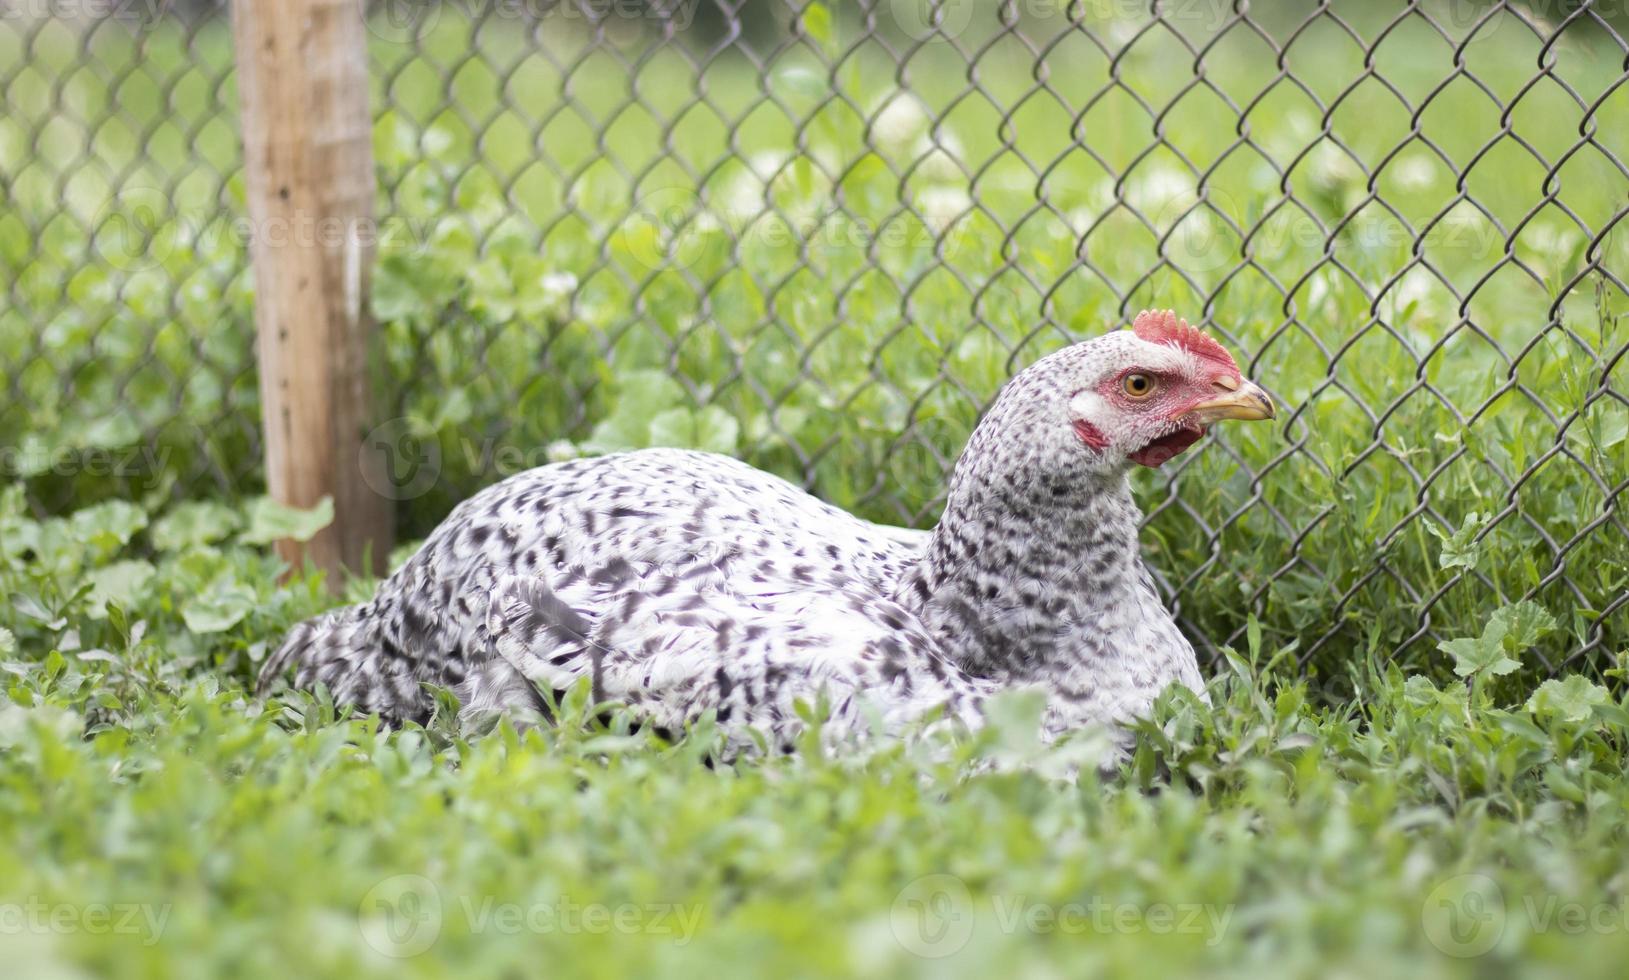 pollos en la granja, concepto de aves de corral. pollo blanco suelto al aire libre. pájaro gracioso en una granja biológica. aves domésticas en una granja de campo libre. cría de pollos. caminar en el patio. industria agrícola foto